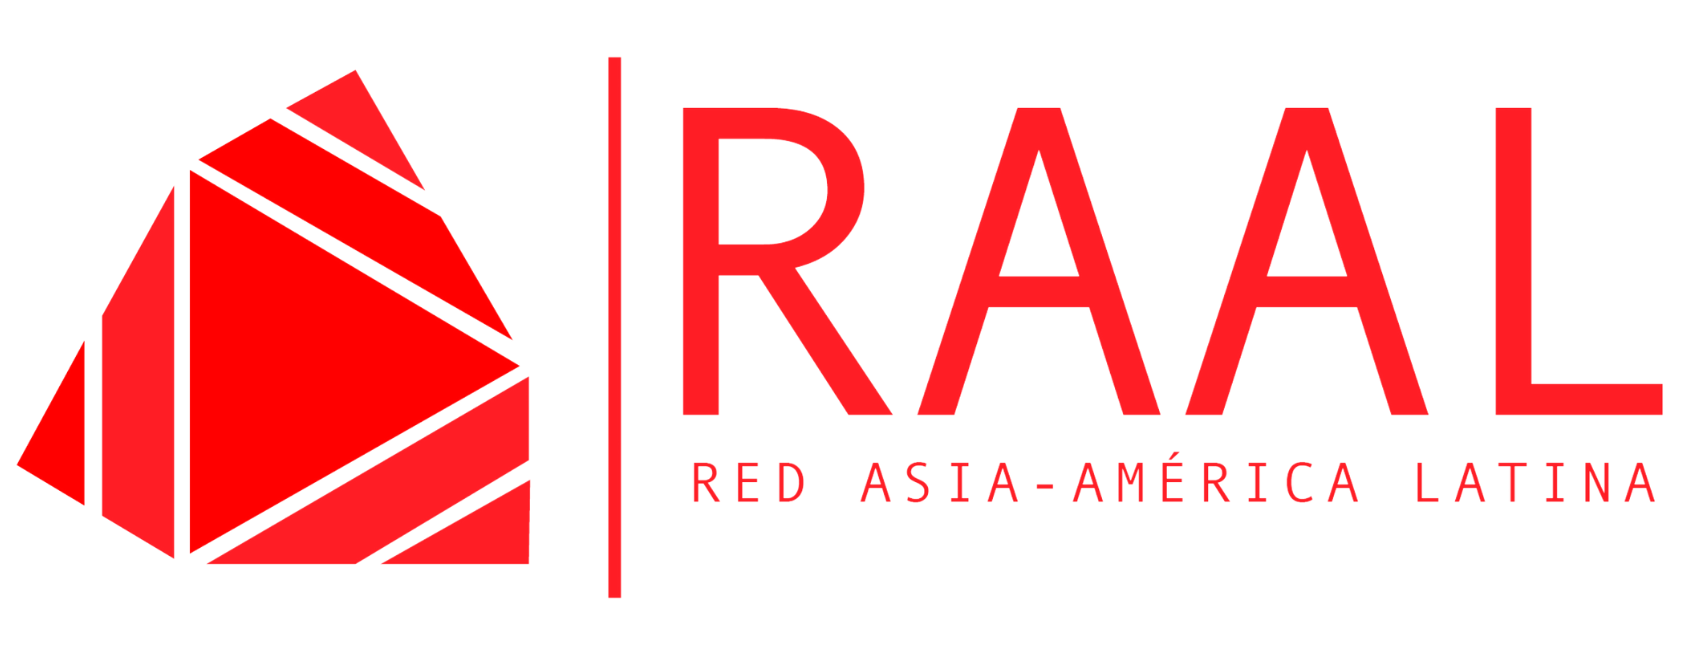 Red Asia-América Latina